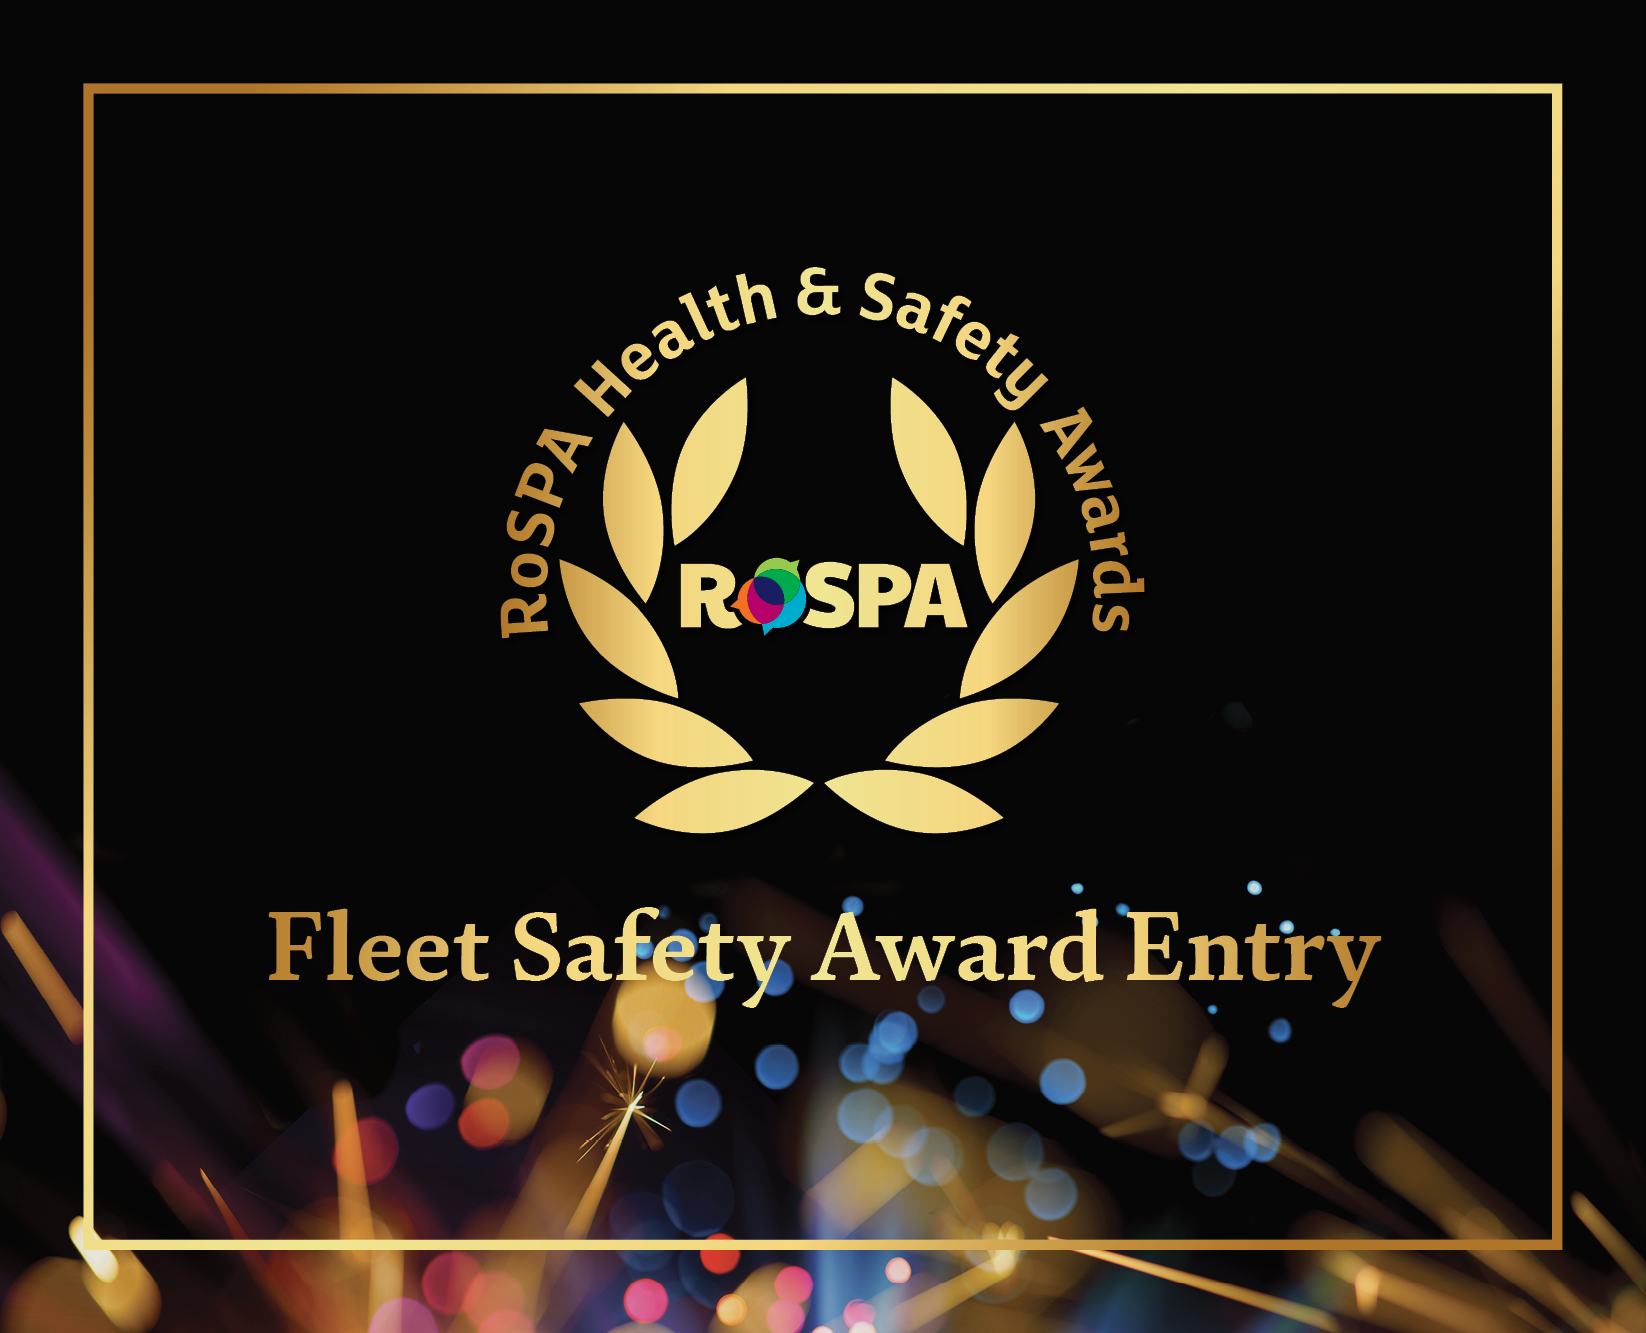 Award Entry - Fleet Safety